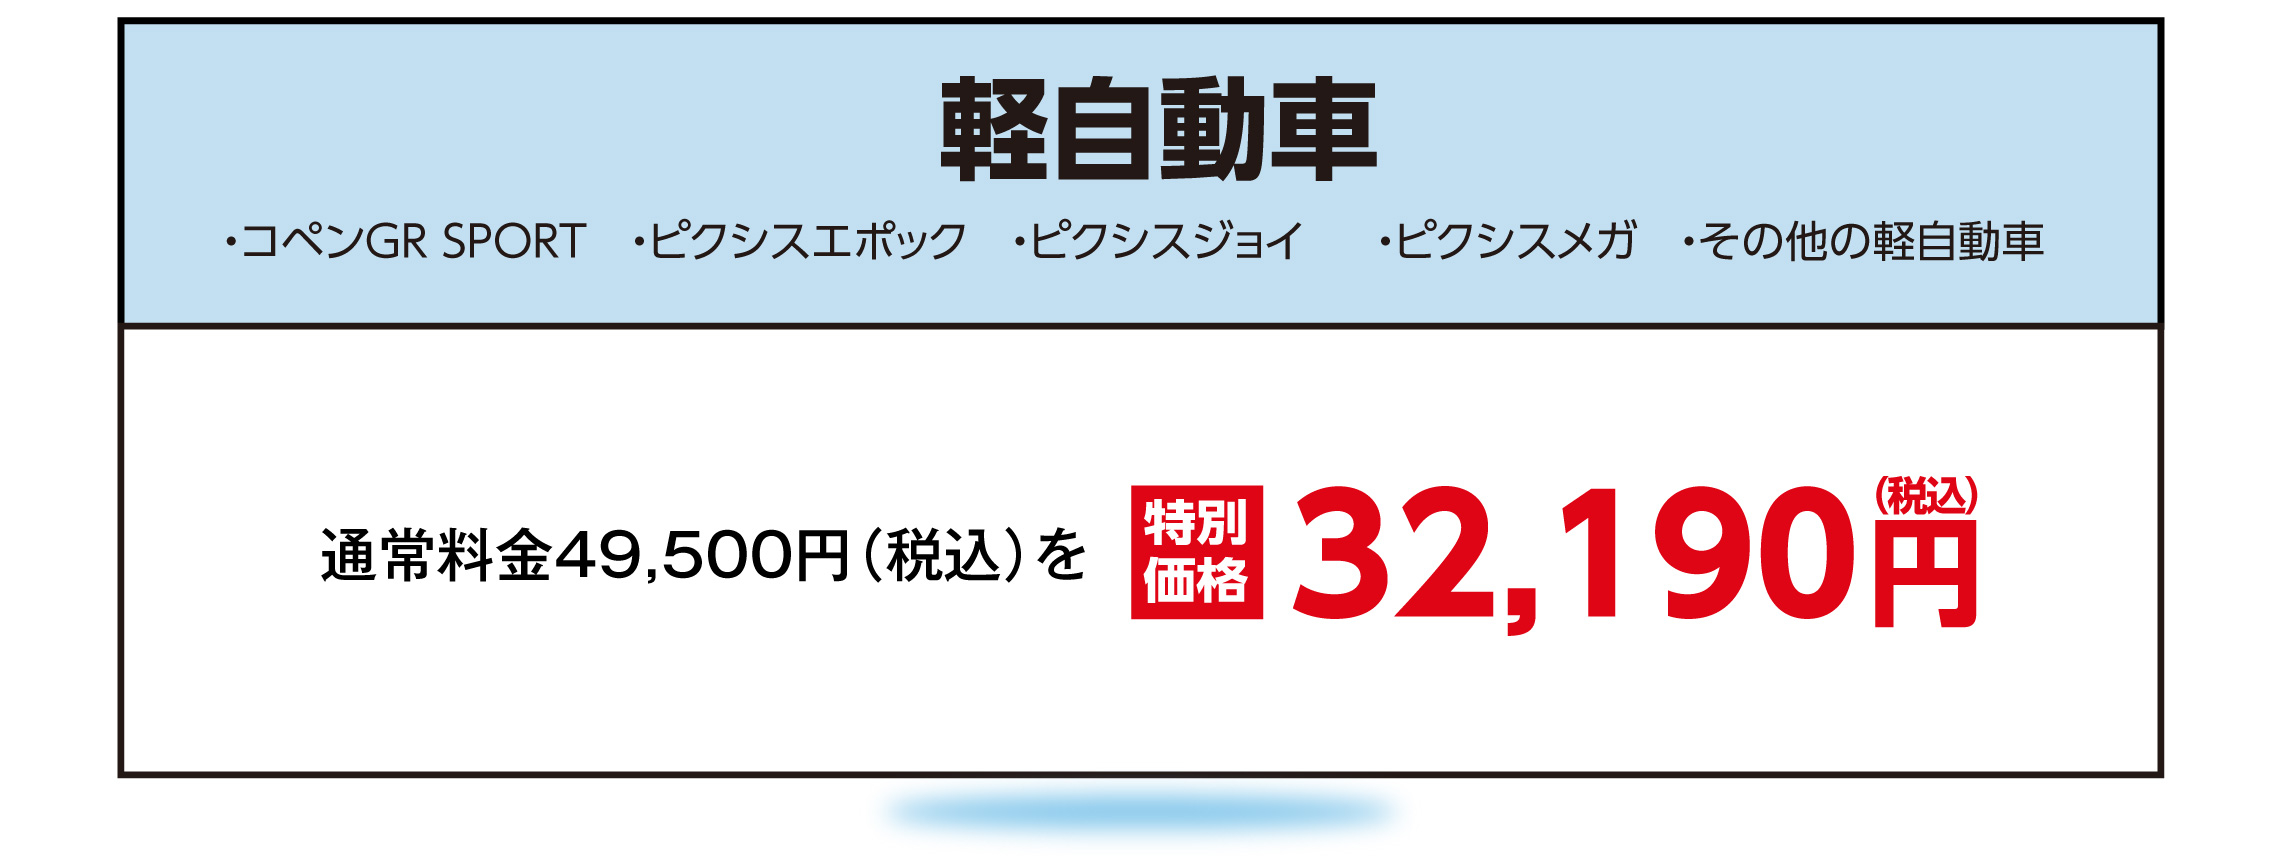 MP33_軽自動車PC